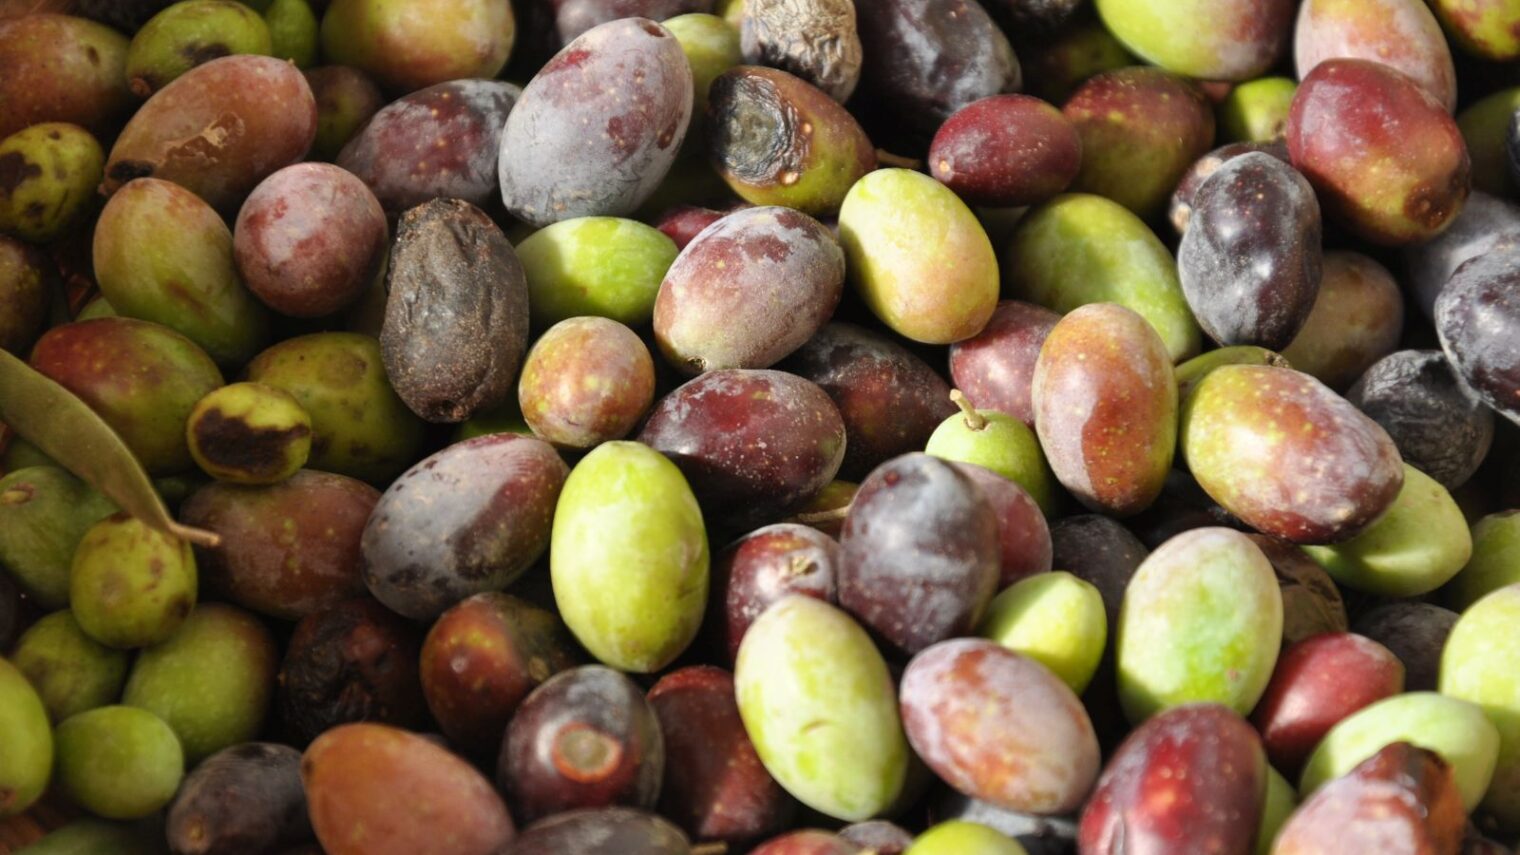 Freshly picked olives from Rish Lakish. Photo courtesy Rish Lakish